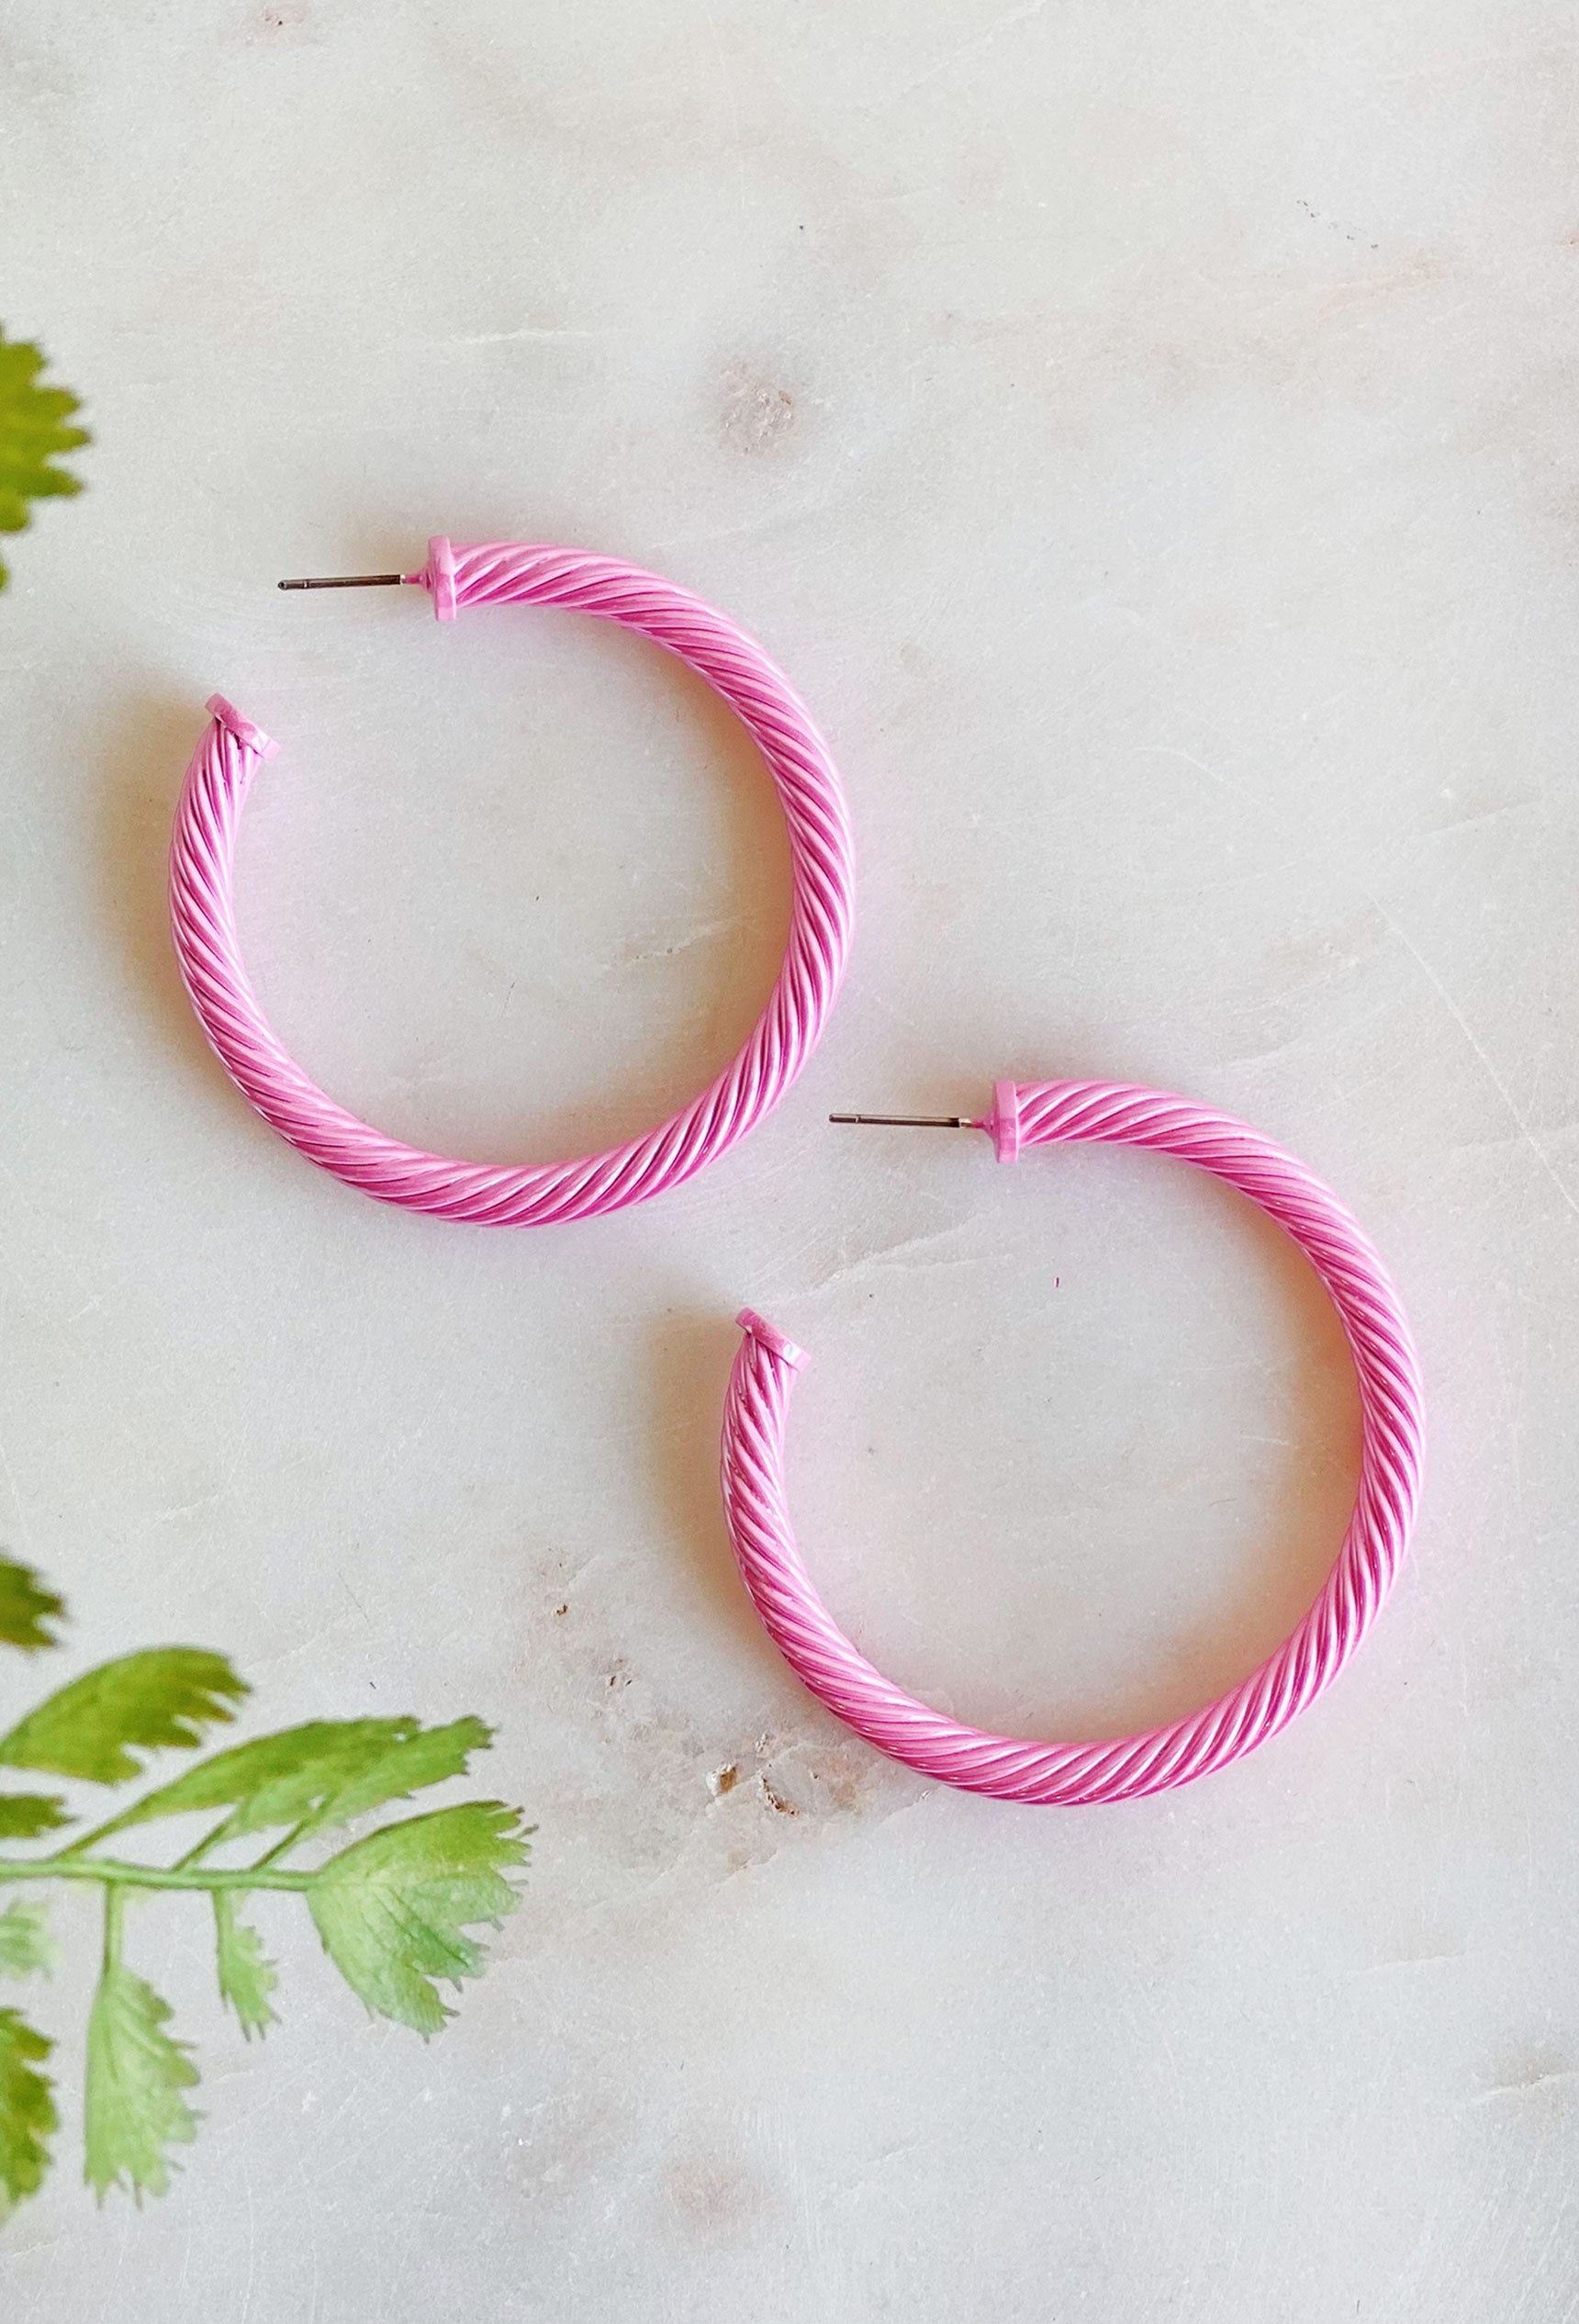 Remi Cable Hoop Earrings in Pink, cable twist hoop earrings